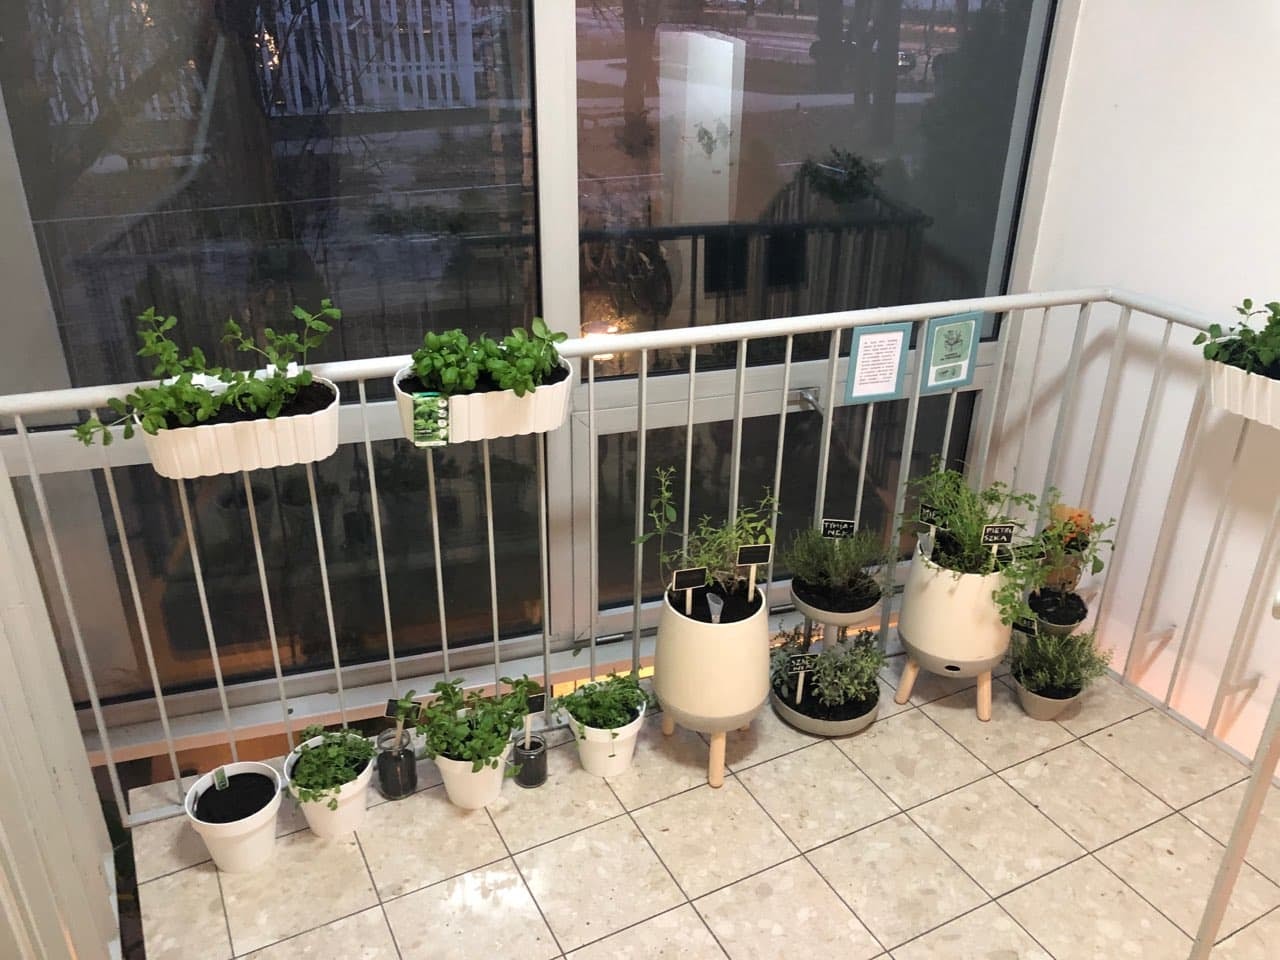 Rośliny w doniczkach stojące na klatce schodowej